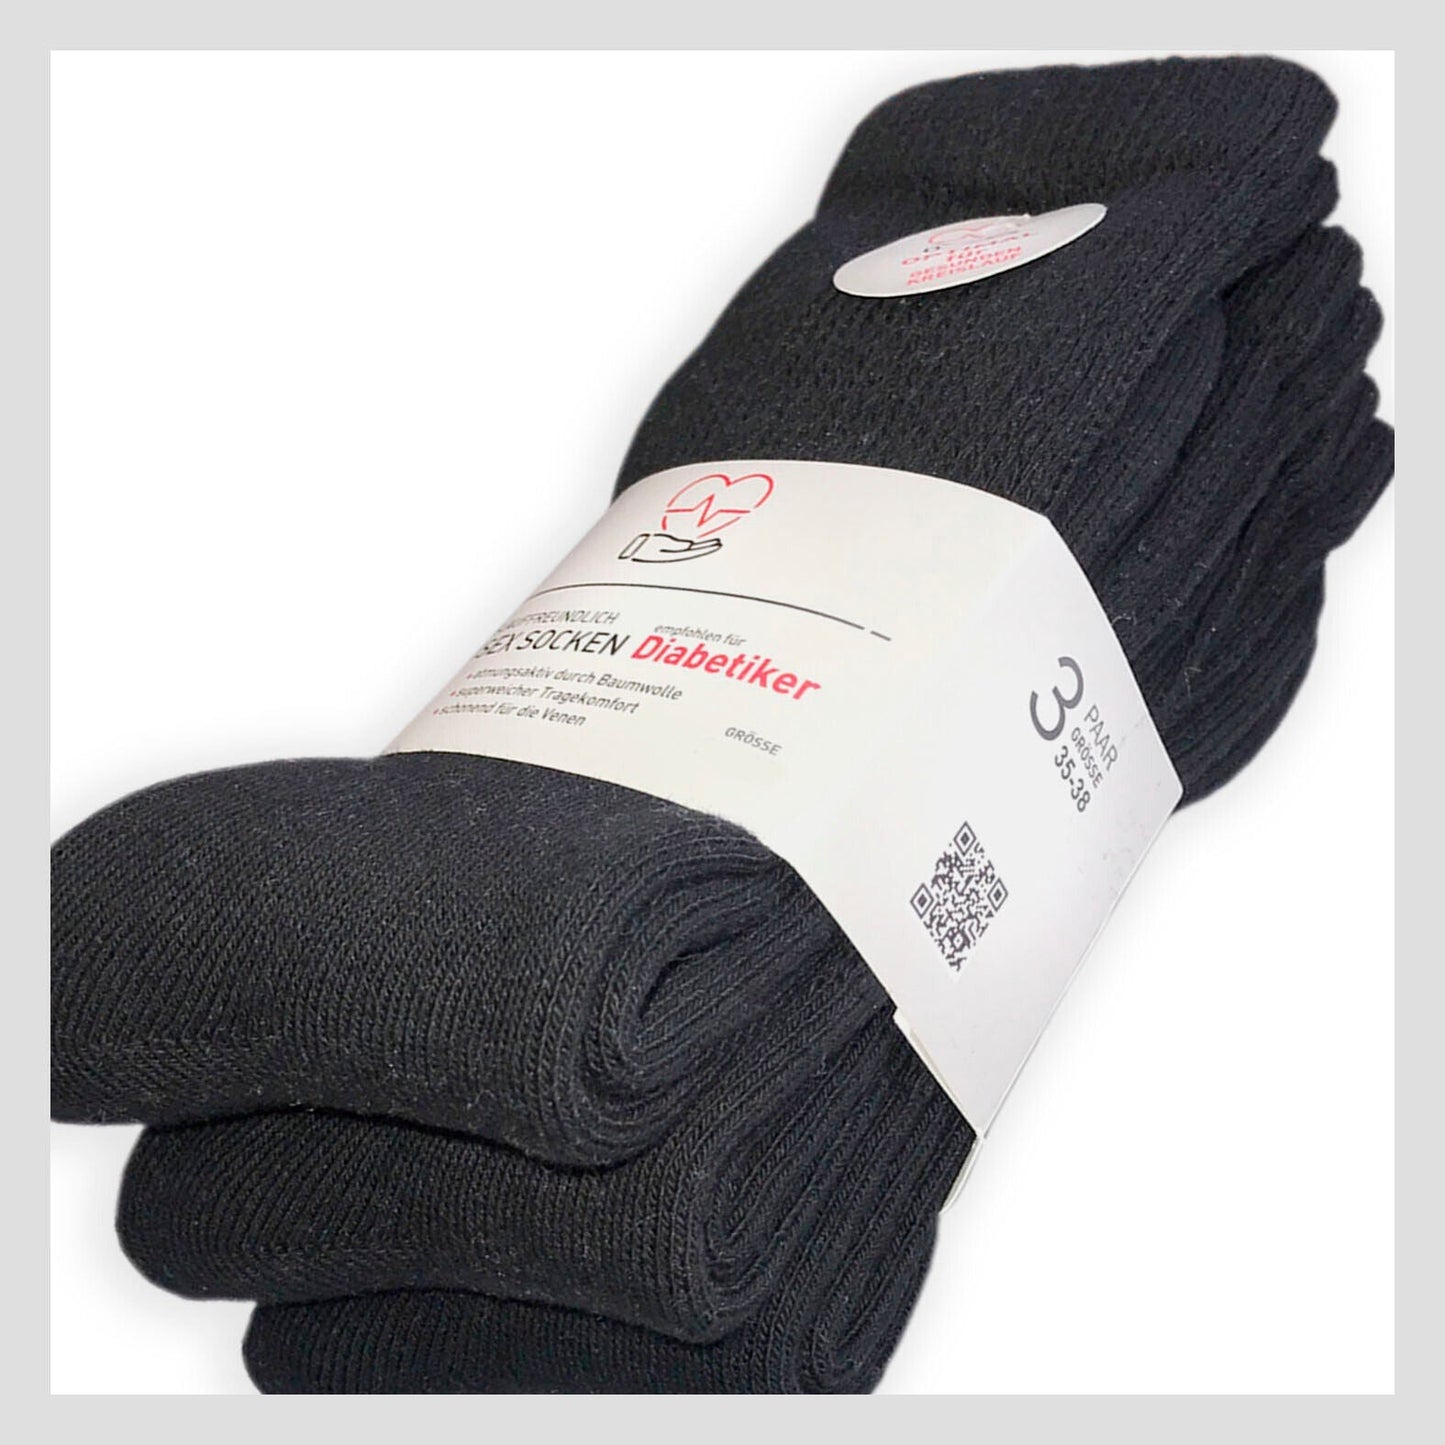 3 o 6 pares de calcetines normales blancos o negros diseñados para diabéticos